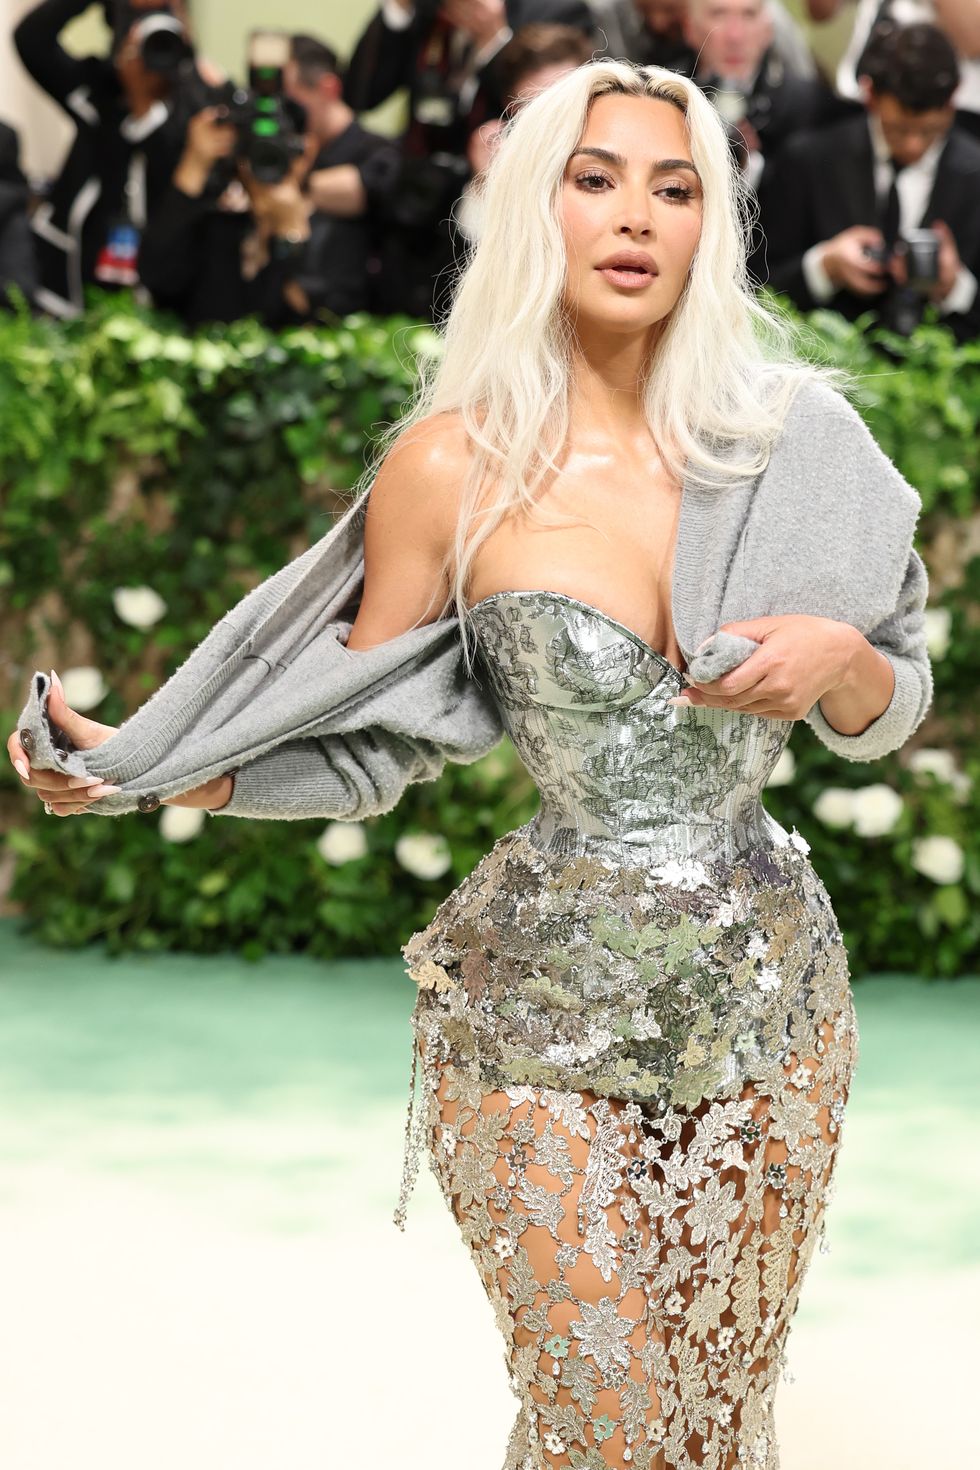 Nhiều người chỉ trích Kim Kardashian vì tiếp tục lăng xê các tiêu chuẩn đẹp phi thực tế, có khả năng ảnh hưởng tiêu cực đến cộng đồng. Cô im lặng trước những chỉ trích, sau đó tiếp tục đăng tải loạt ảnh gây tranh cãi trên.